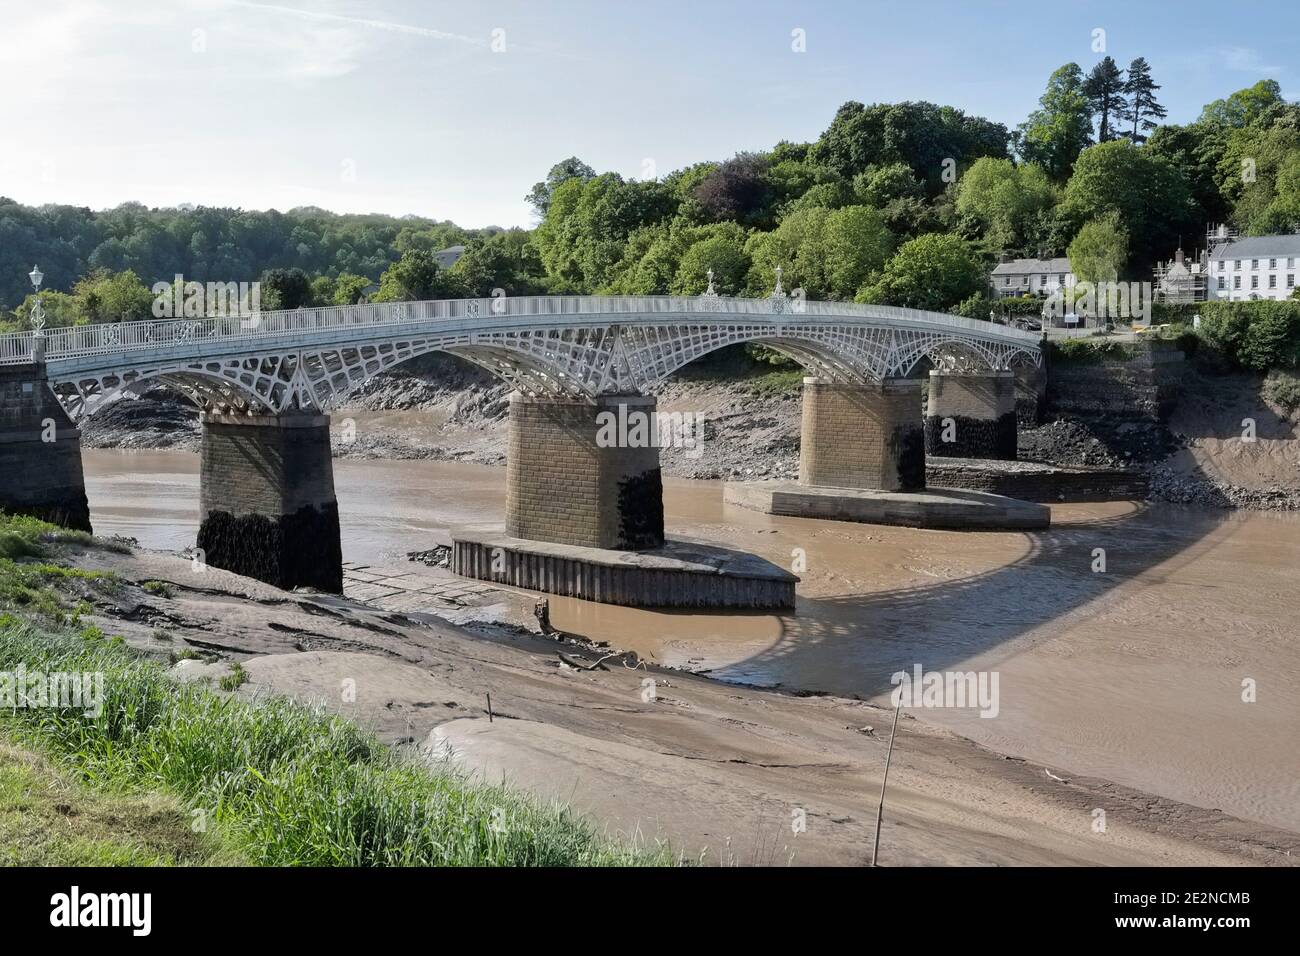 Ponte di ferro sul fiume Wye a Chepstow, il confine tra Inghilterra e Galles. A bassa marea, confine gallese inglese Foto Stock